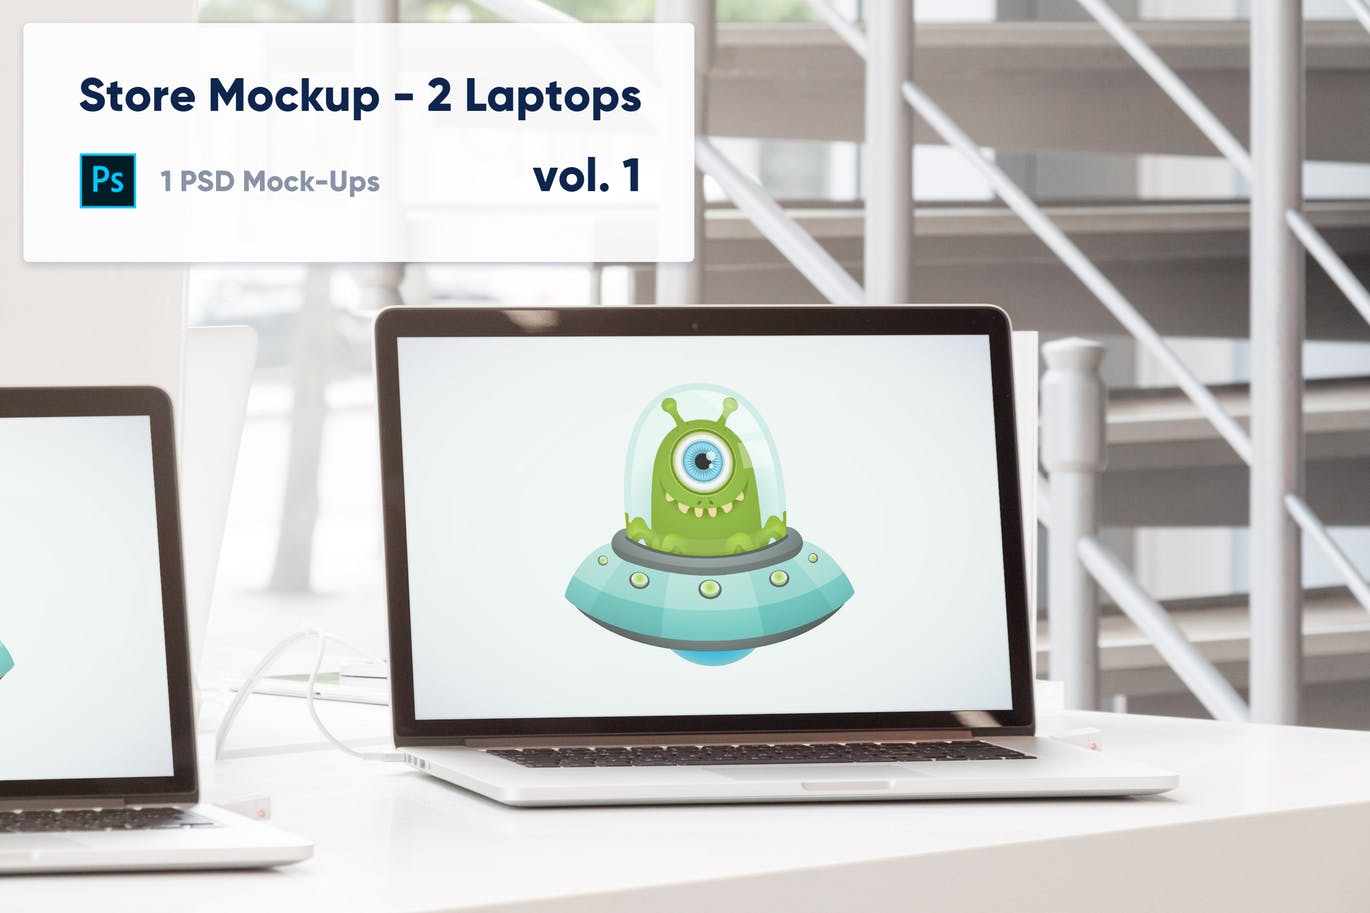 零售店场景笔记本电脑屏幕预览第一素材精选样机模板v1 Laptops Mockup in the Store – Vol. 1插图